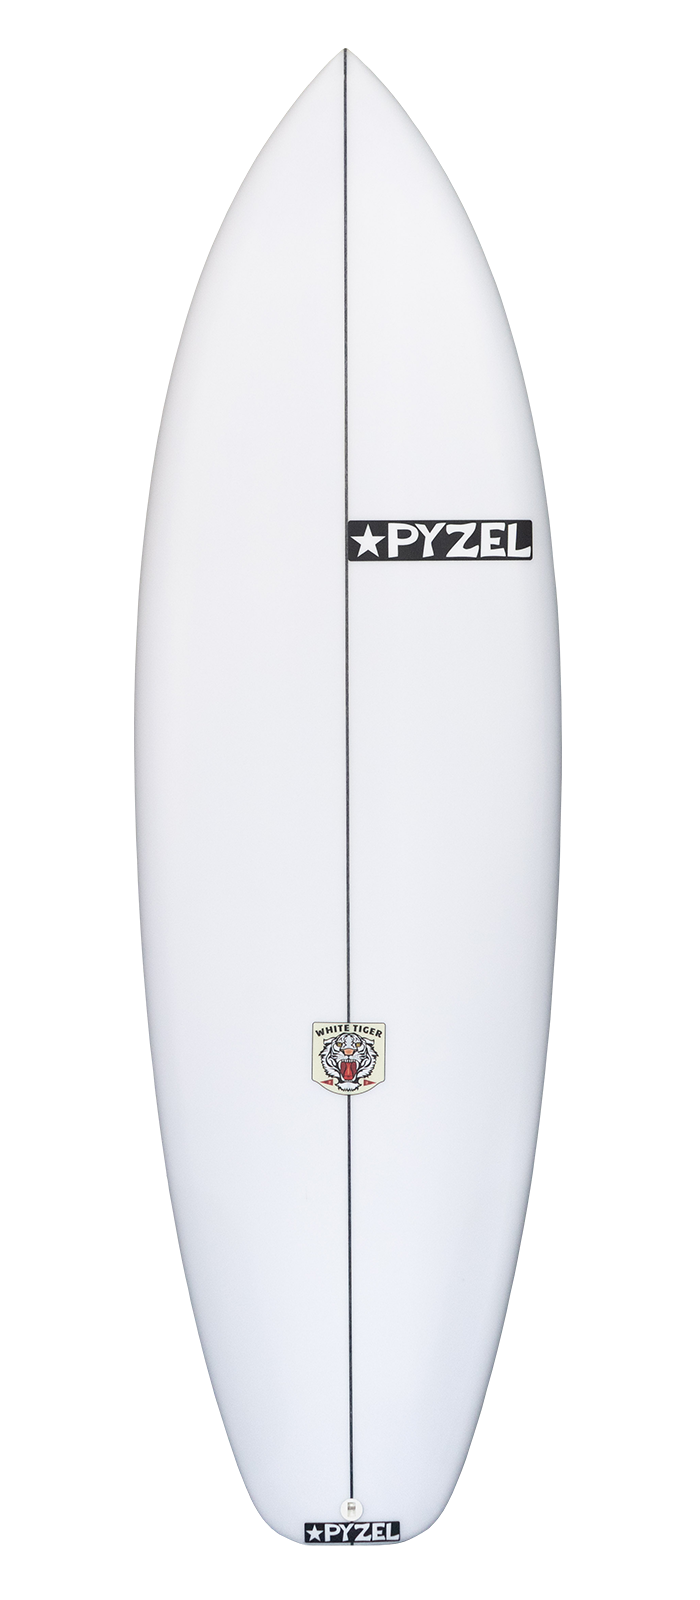 Planche de surf PYZEL White Tiger 5'10 - 33,5Lts FCSII